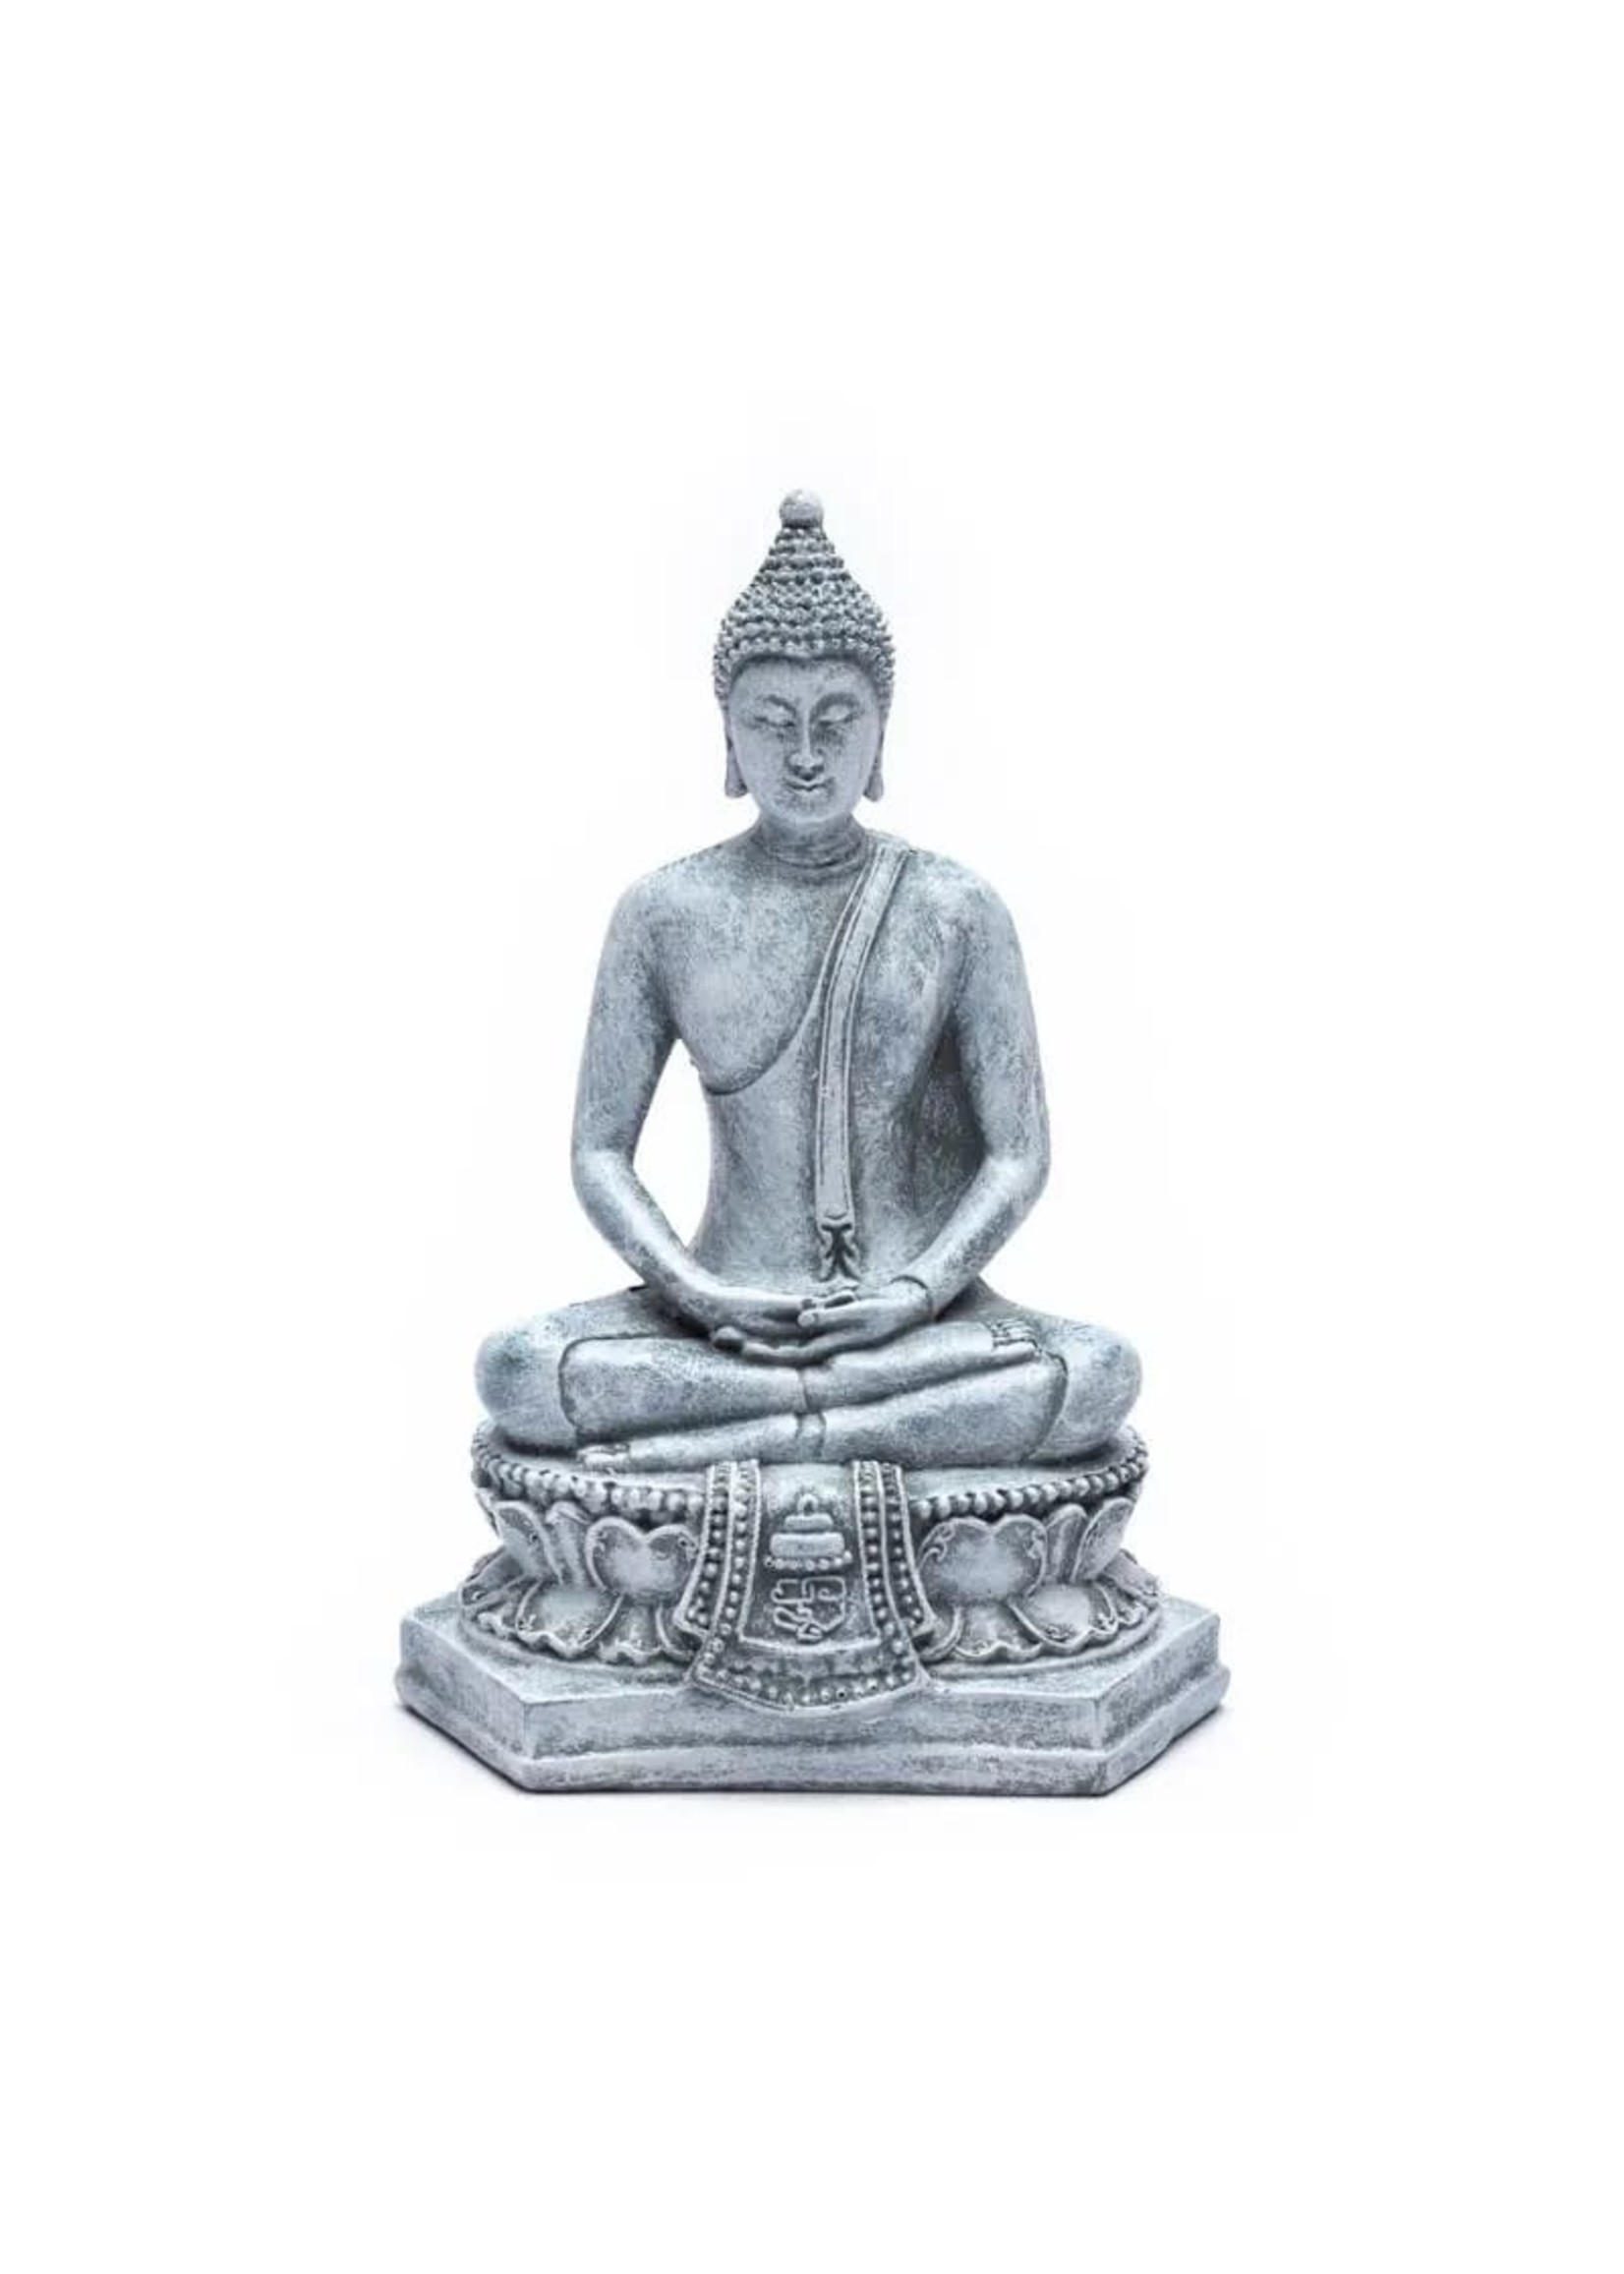 PuurSpirits Meditatie Boeddha Thailand Grijs